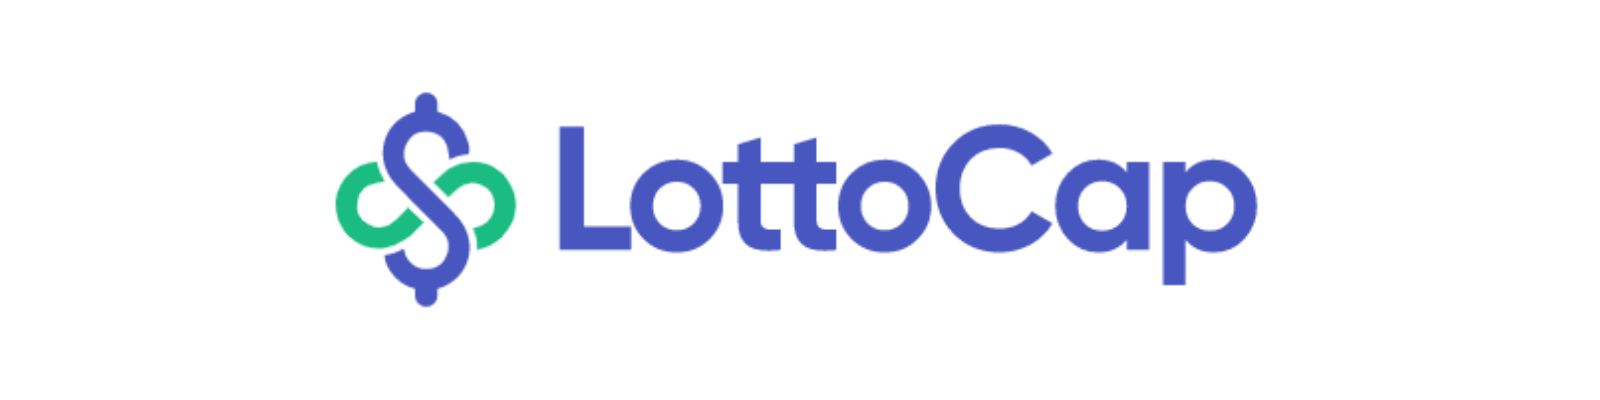 Lottocap é confiável? Conheça a Verdade agora mesmo!